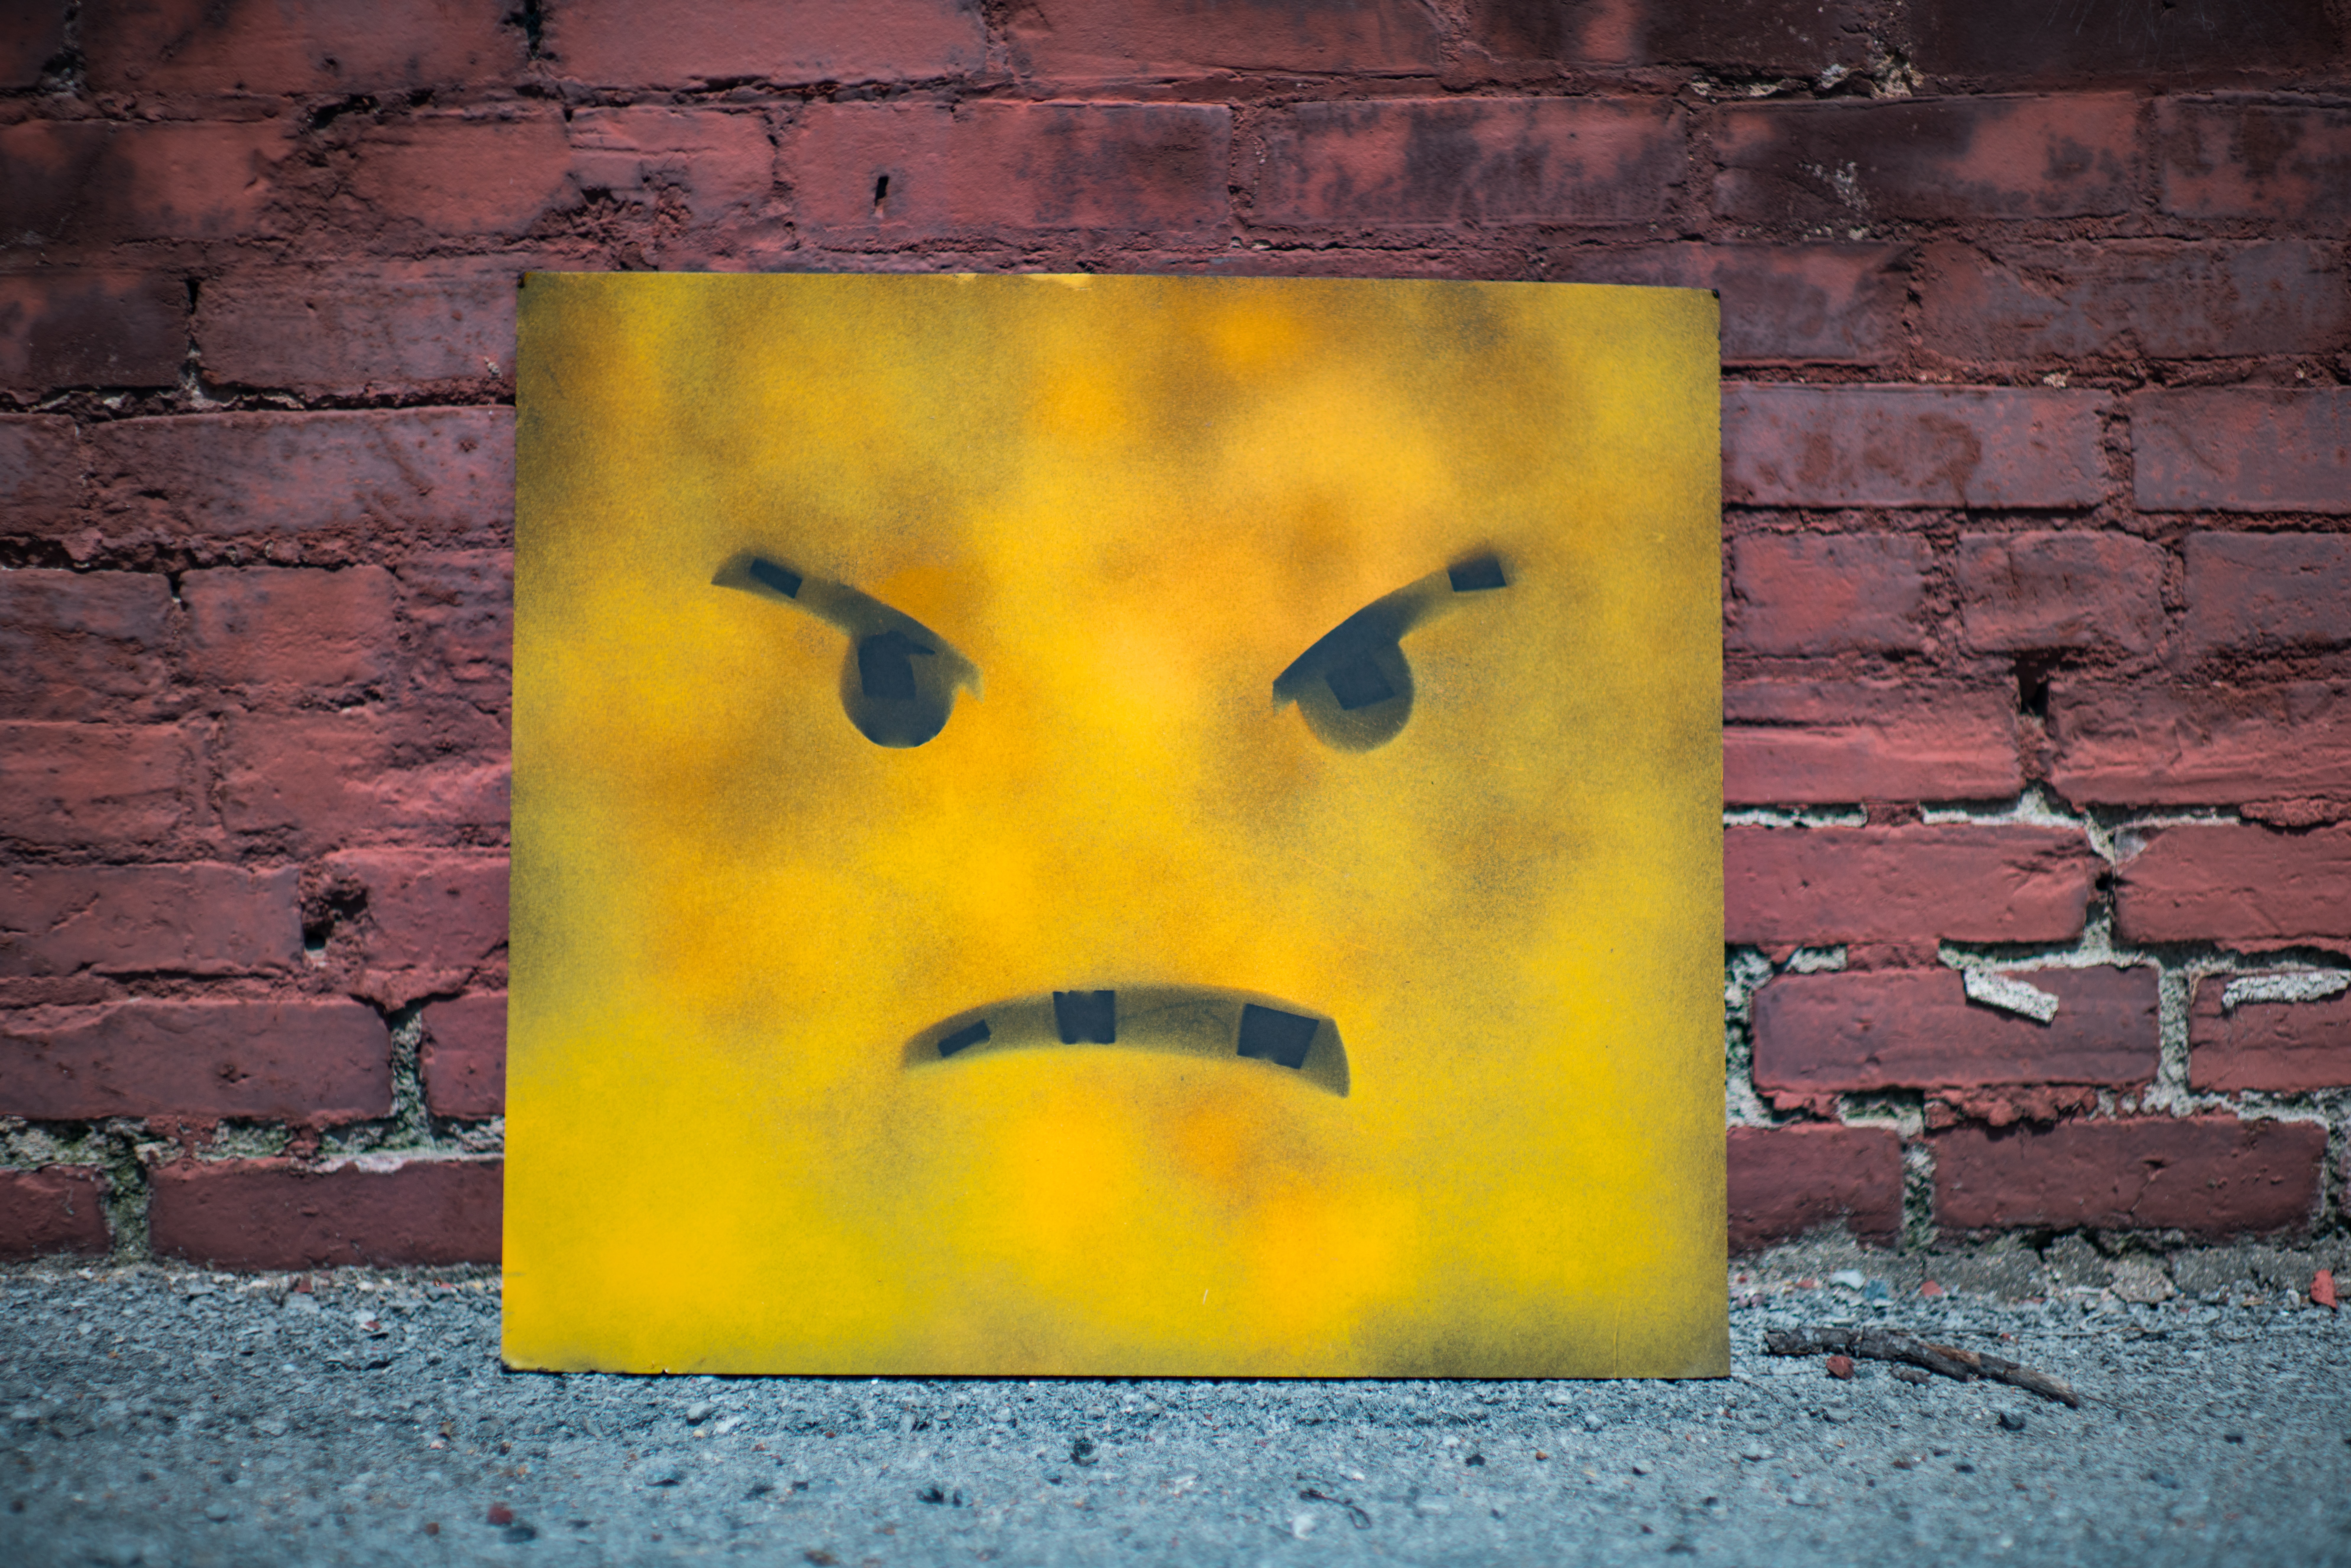 Las emociones forman parte de los humanos, pero ¿qué hacer si la ira y el enojo salen de control? (Foto Prensa Libre Andre Hunter/ Unsplash)